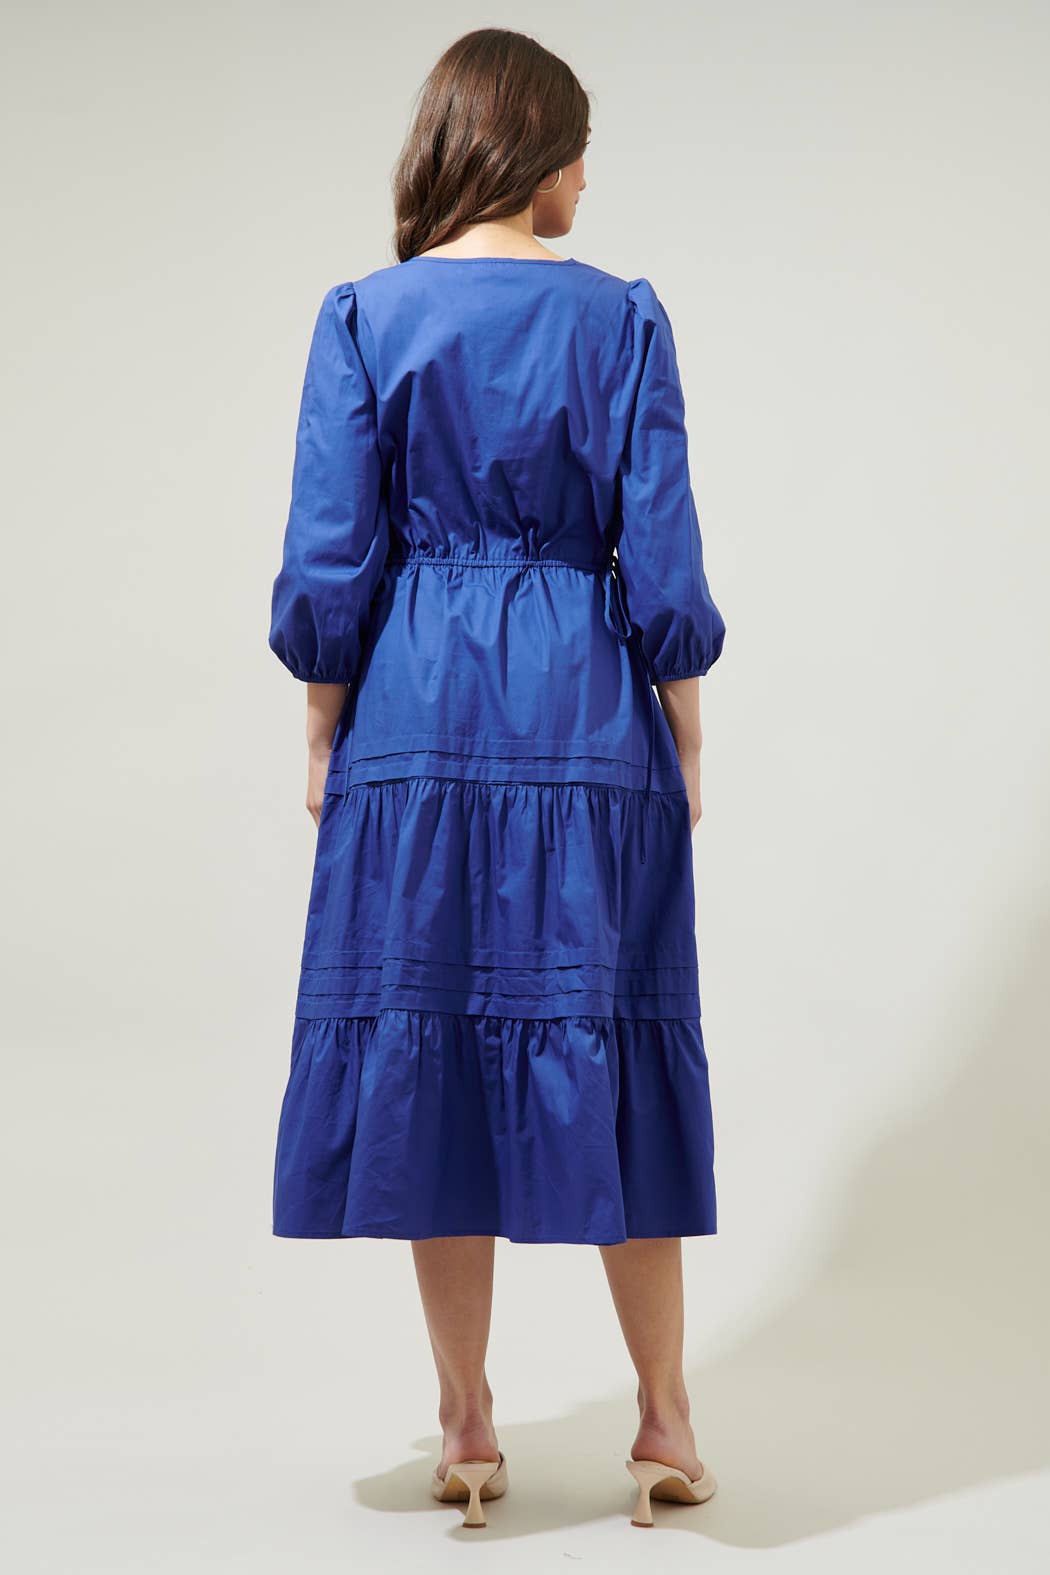 Atelier Poplin Tiered Midi Dress: Navy / XS